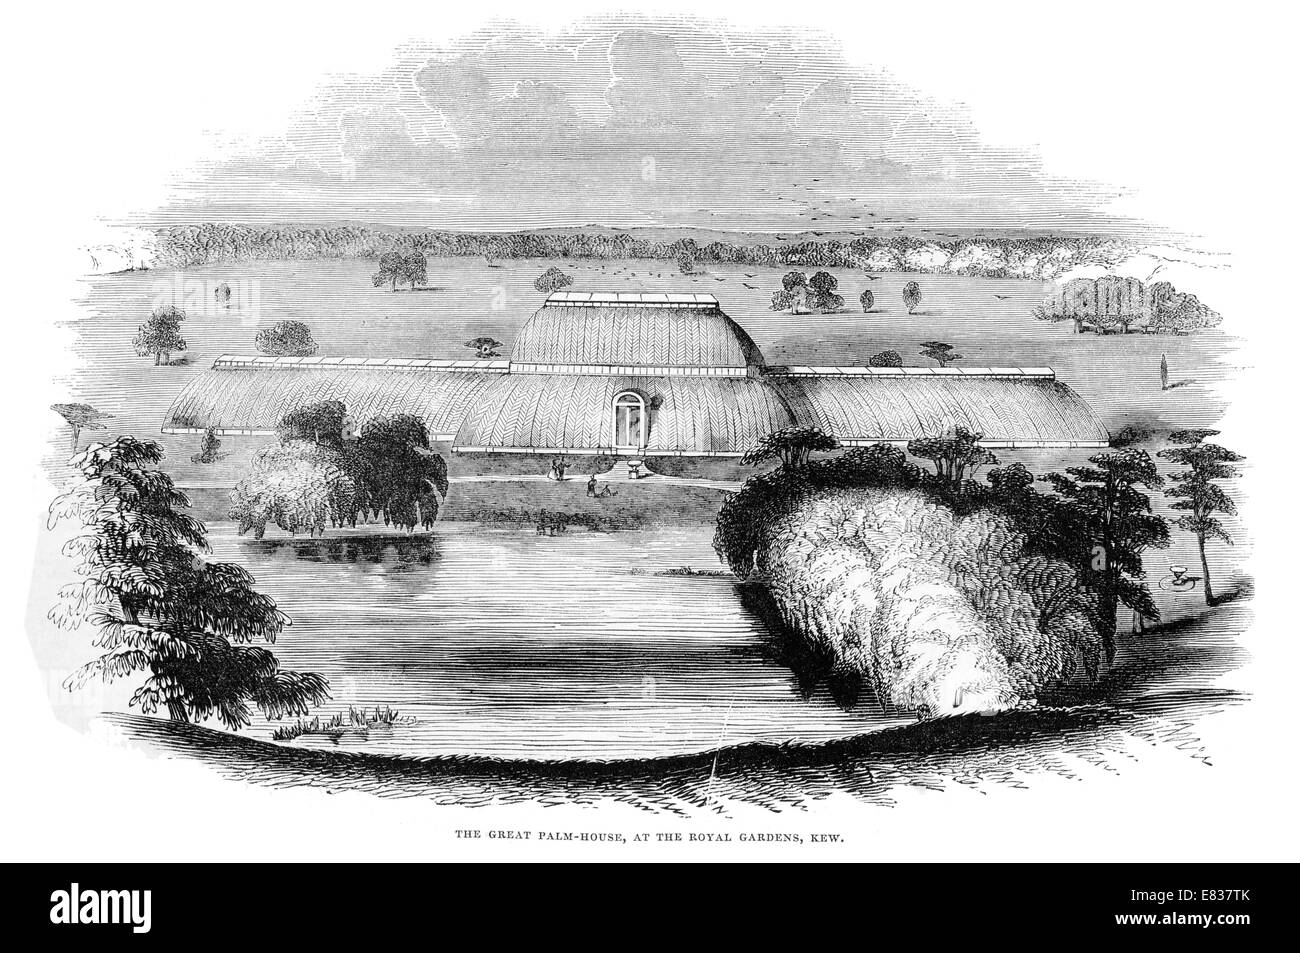 La Gran casa de las palmeras en el Royal Botanic gardens de Kew 1844 London Borough of Richmond upon Thames Foto de stock